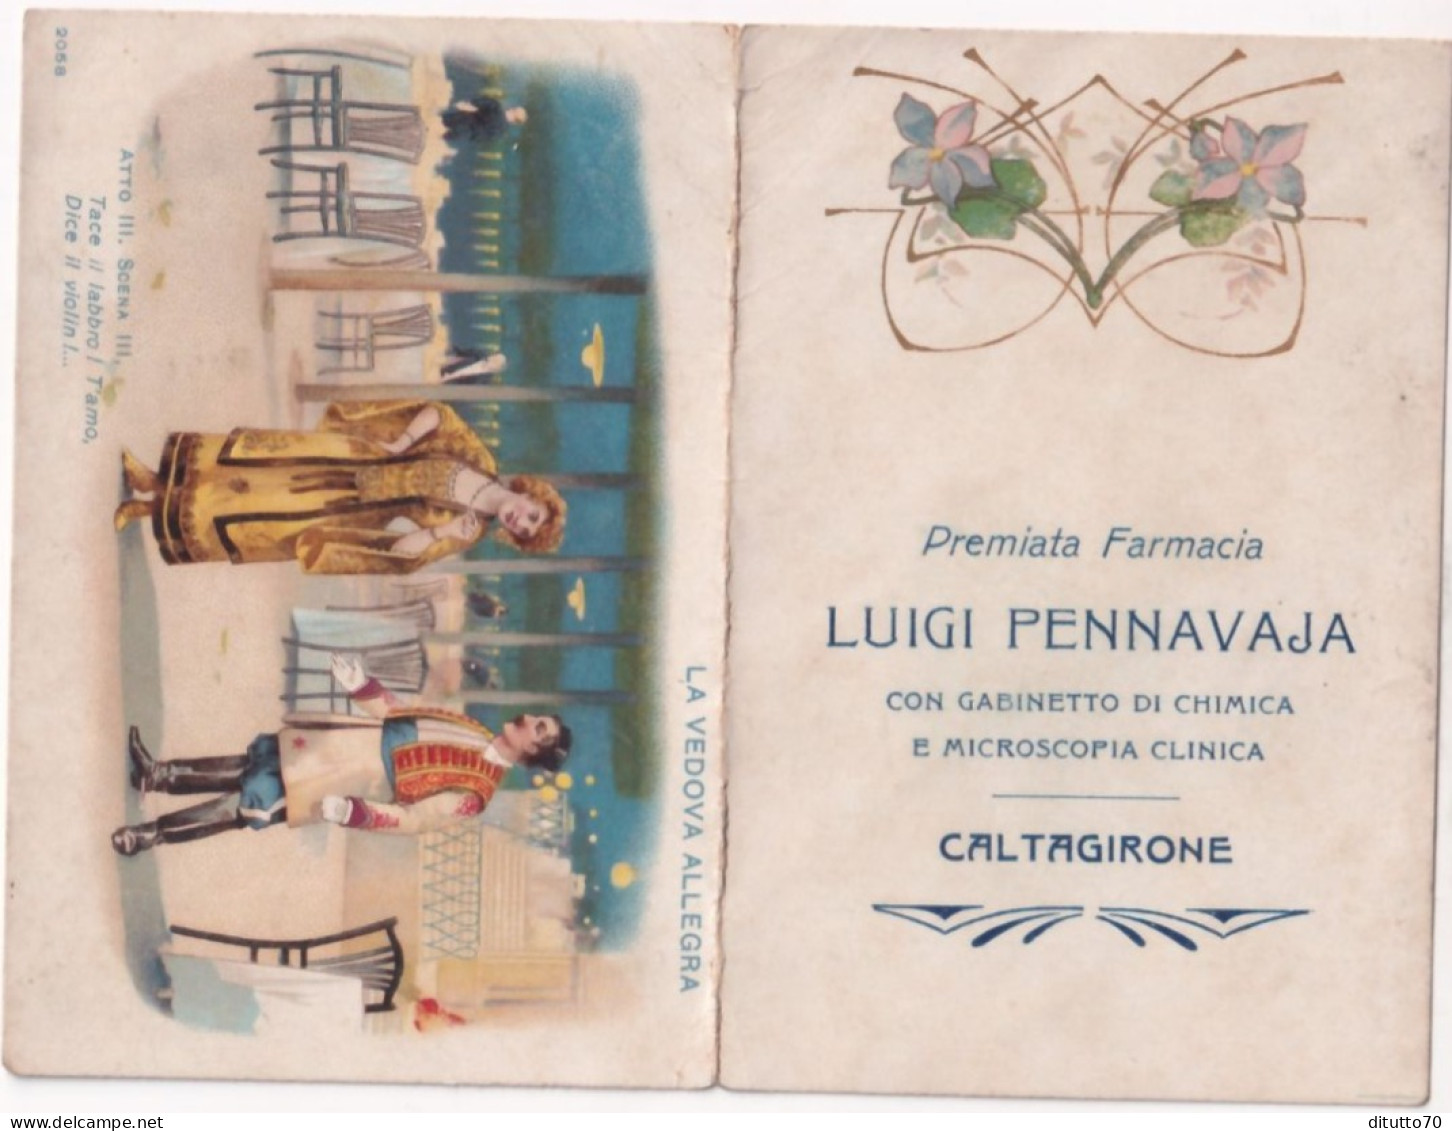 Calendarietto - Premiata Farmacia - Luigi Pennavaja - Caltagirone - Anno 1915 - Formato Piccolo : 1921-40